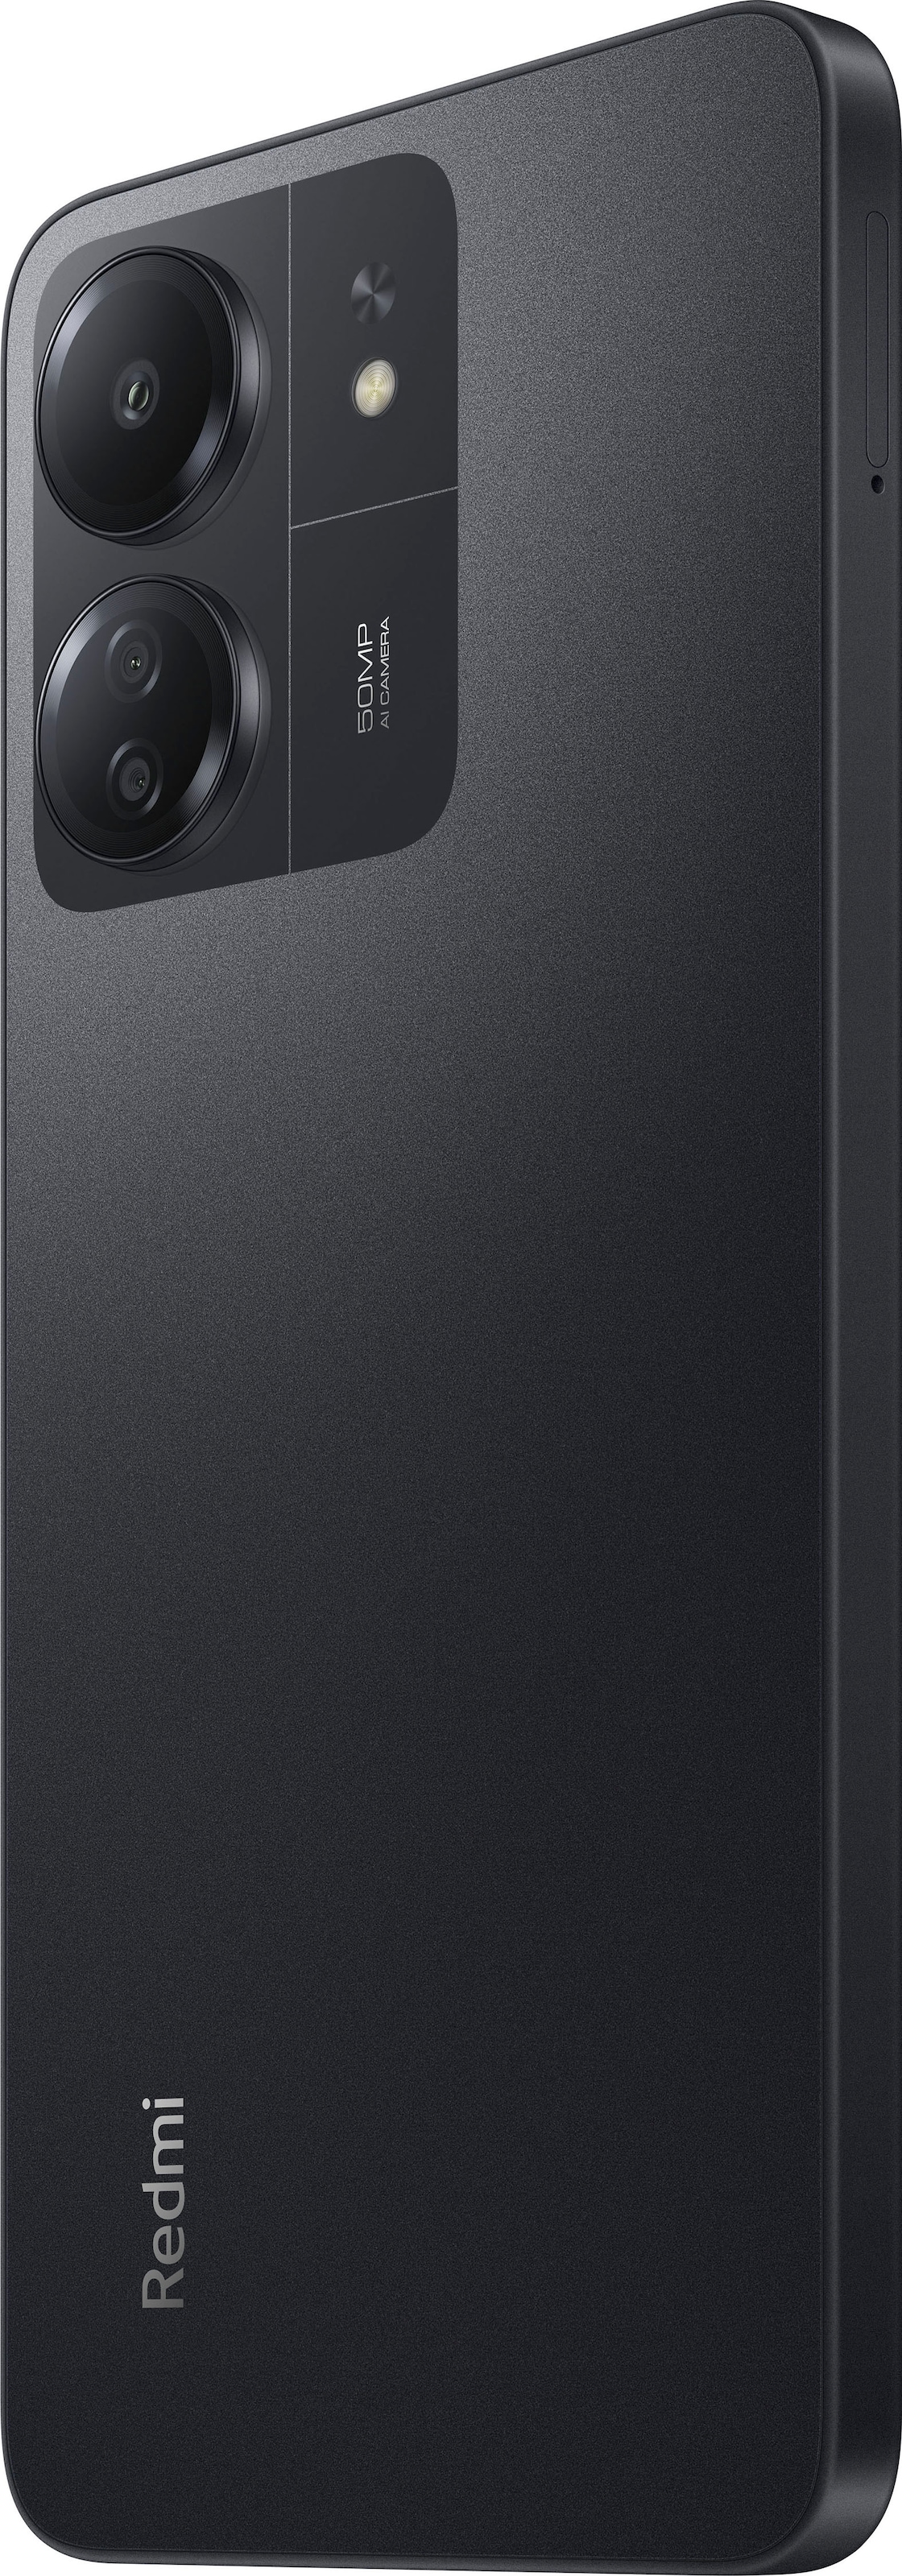 Xiaomi Smartphone »Redmi 13C 4GB+128GB«, Schwarz, 17,1 cm/6,74 Zoll, 128 GB Speicherplatz, 50 MP Kamera